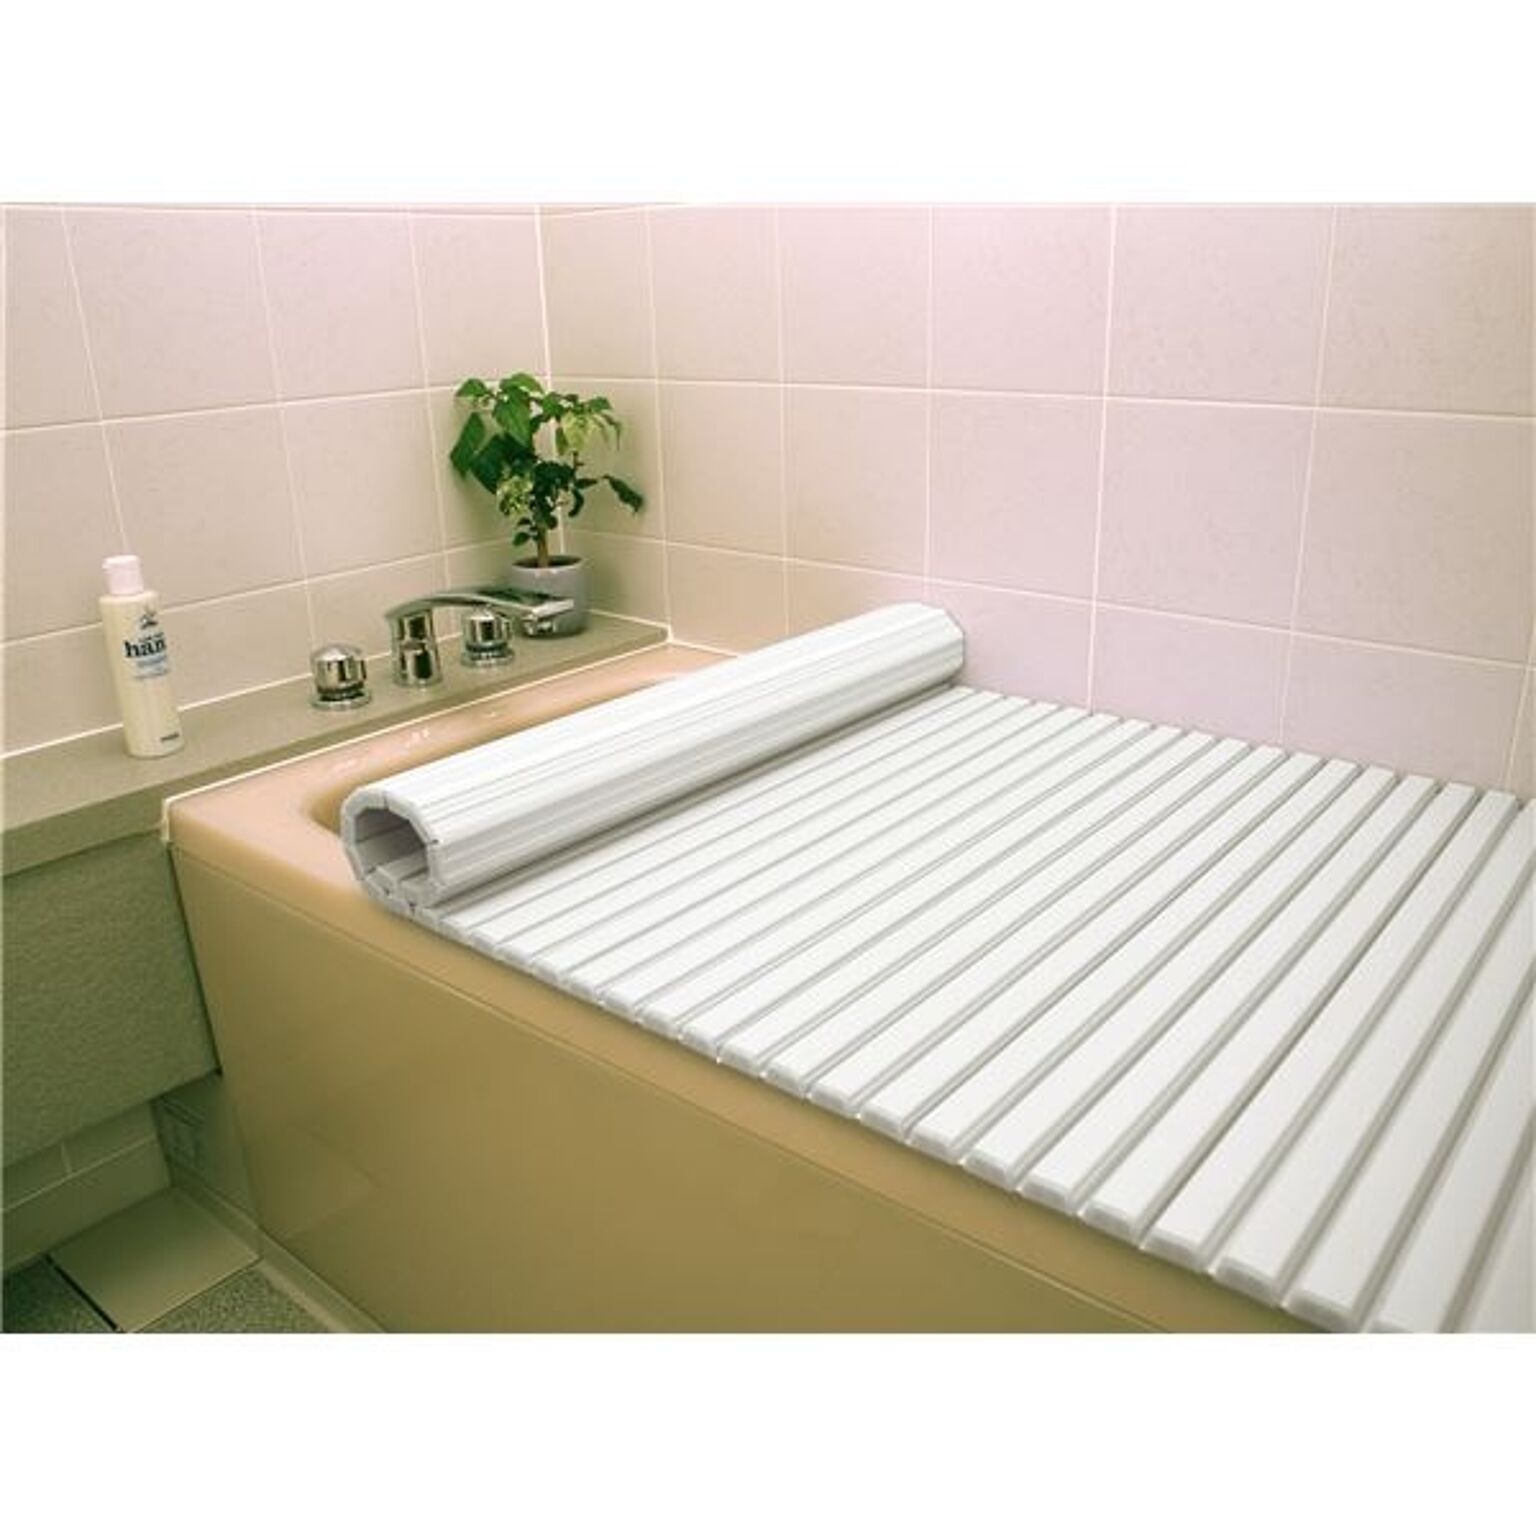 シャッター式風呂ふた/巻きフタ 80cm×160cm用 ホワイト SGマーク認定 日本製